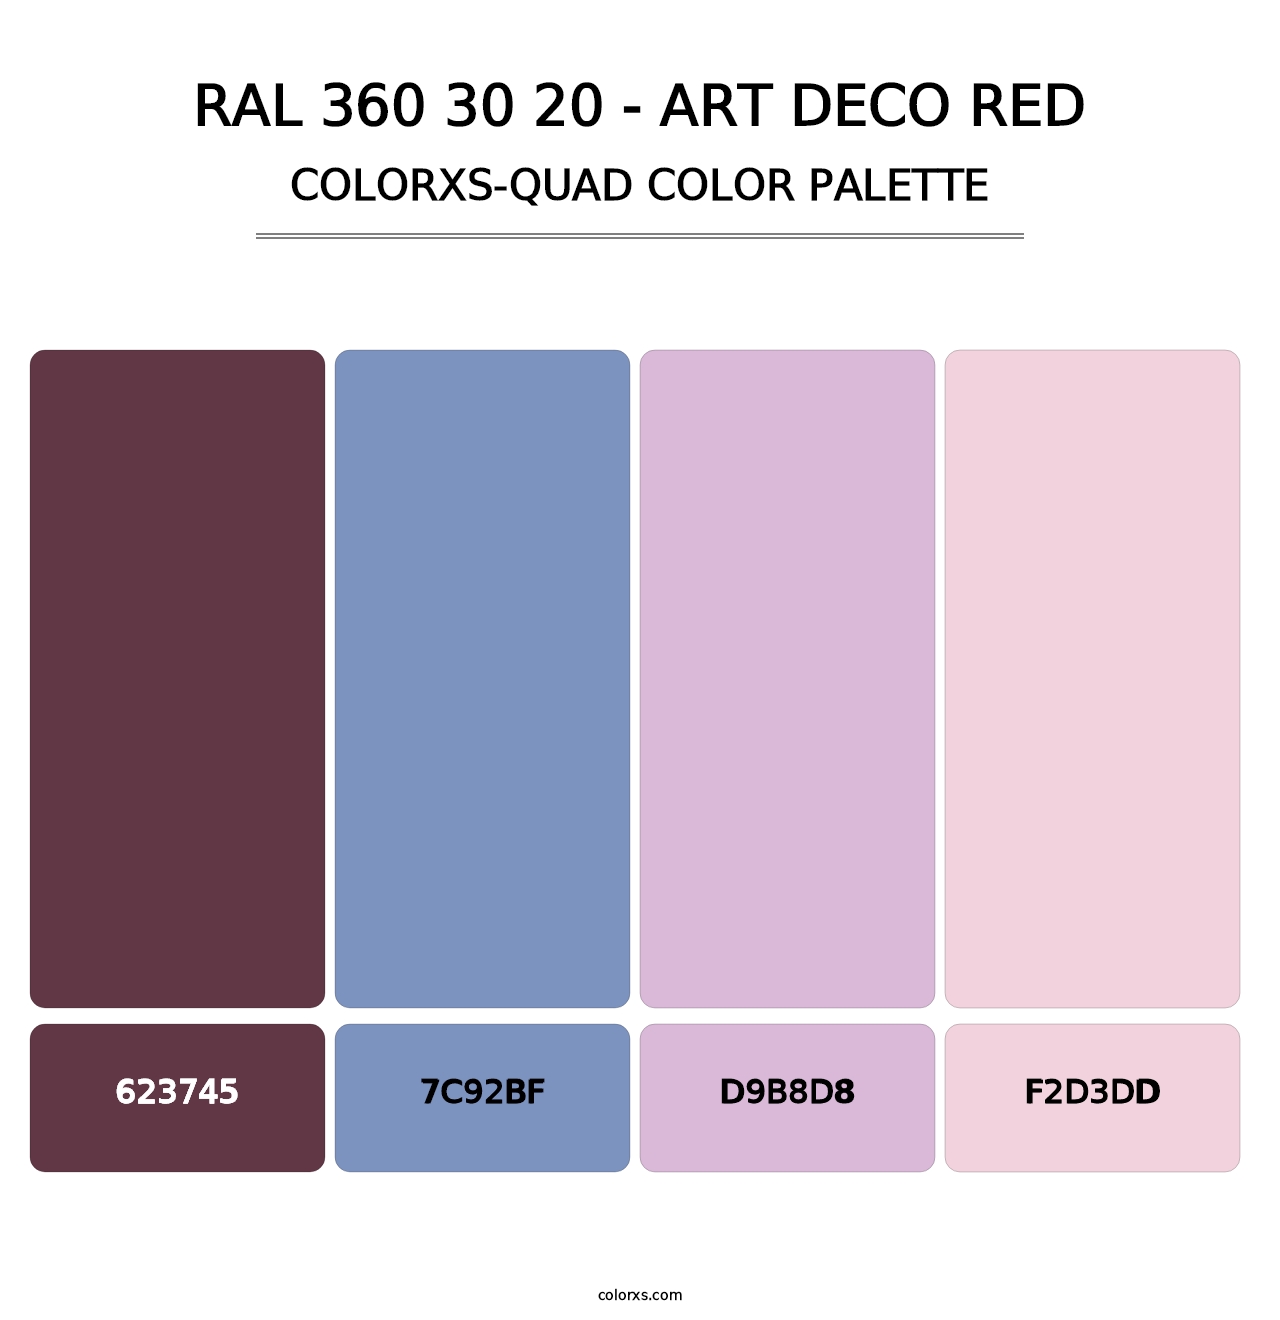 RAL 360 30 20 - Art Deco Red - Colorxs Quad Palette